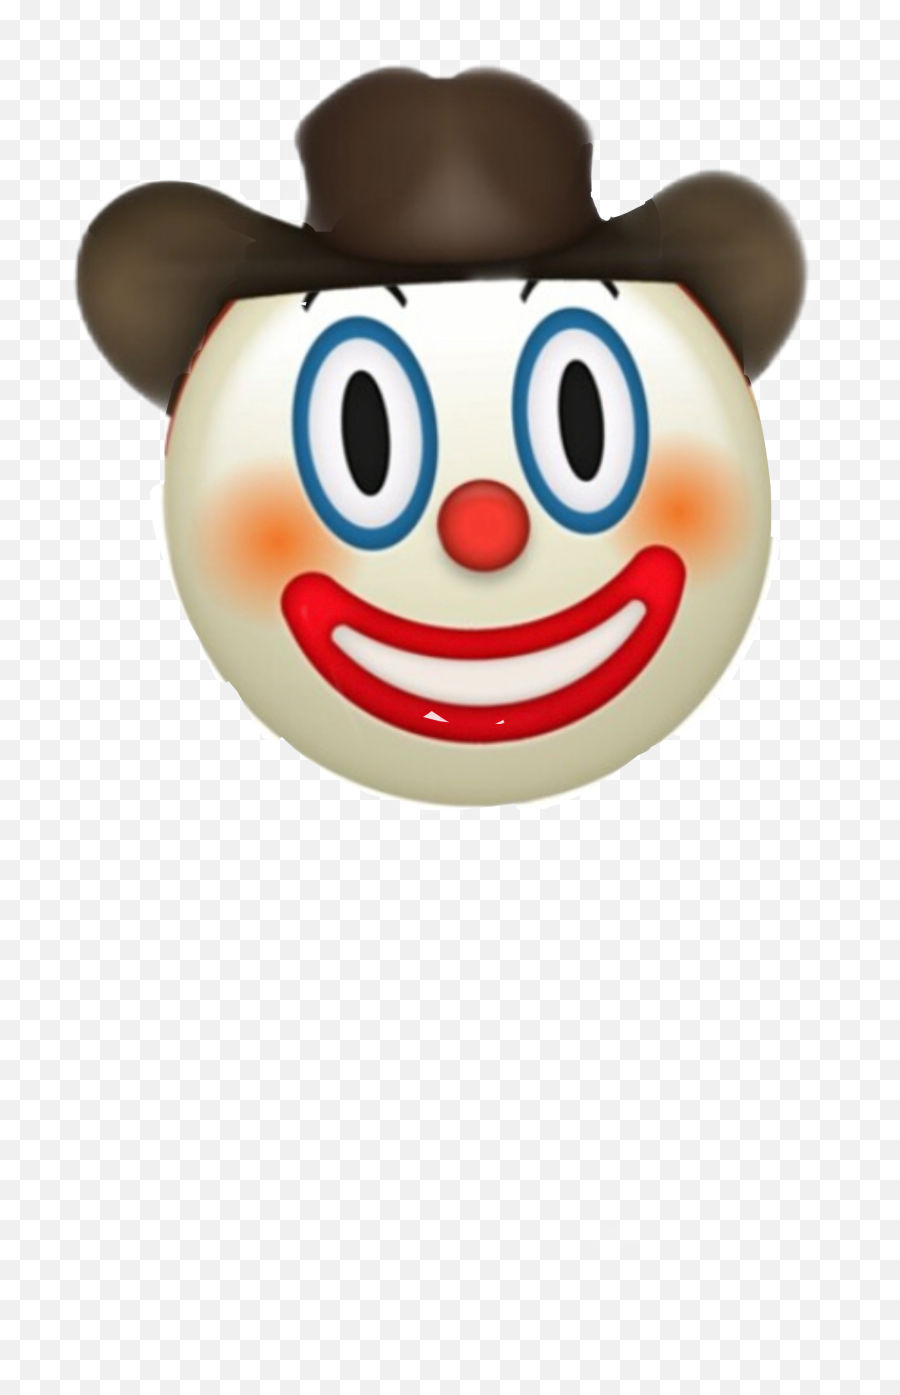 Clownboy Emoji Clown Cowboy Sticker - They Always Ask Yeehaw But Never Hawyee,Clownboy Emoji